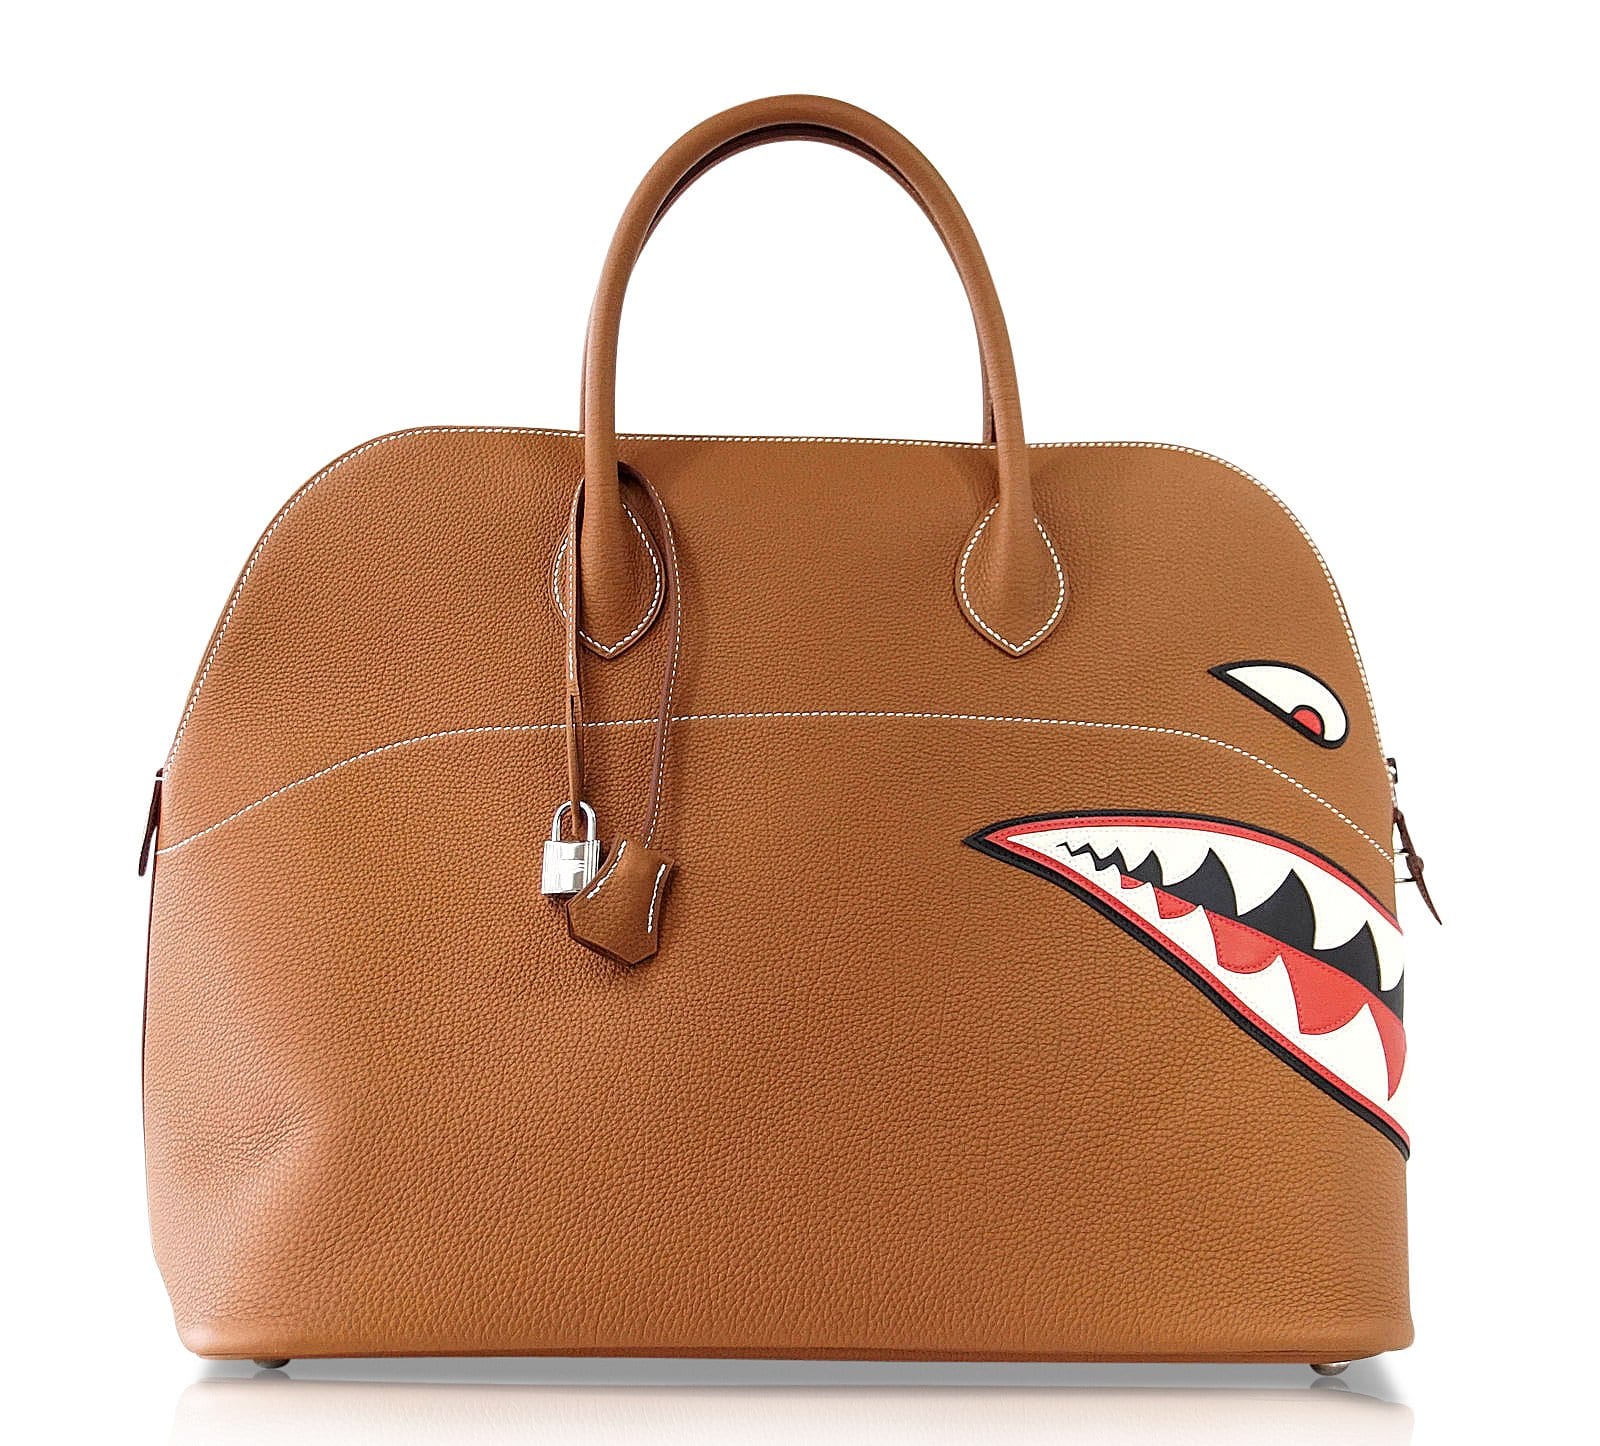 HealthdesignShops, Hermès Bolide Travel bag 390688